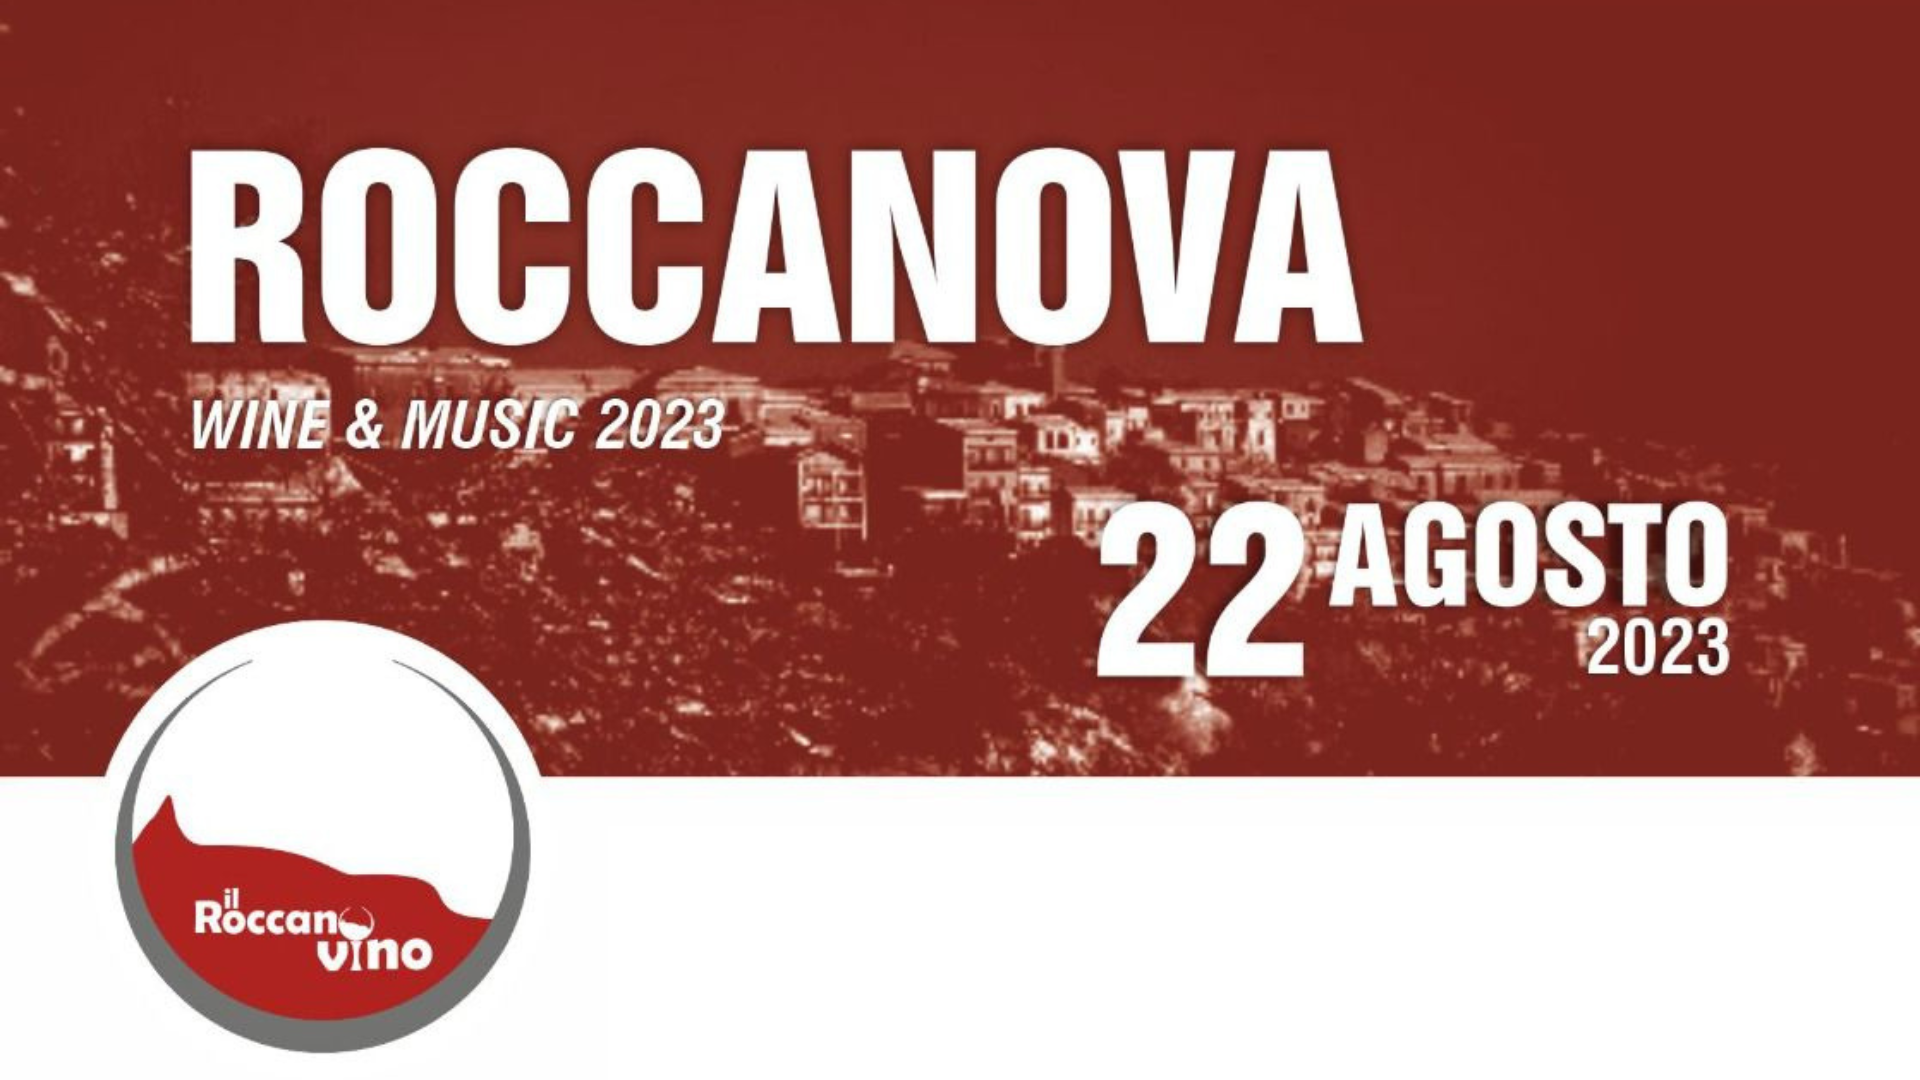 ROCCANOVA WINE & MUSIC - 22 AGOSTO